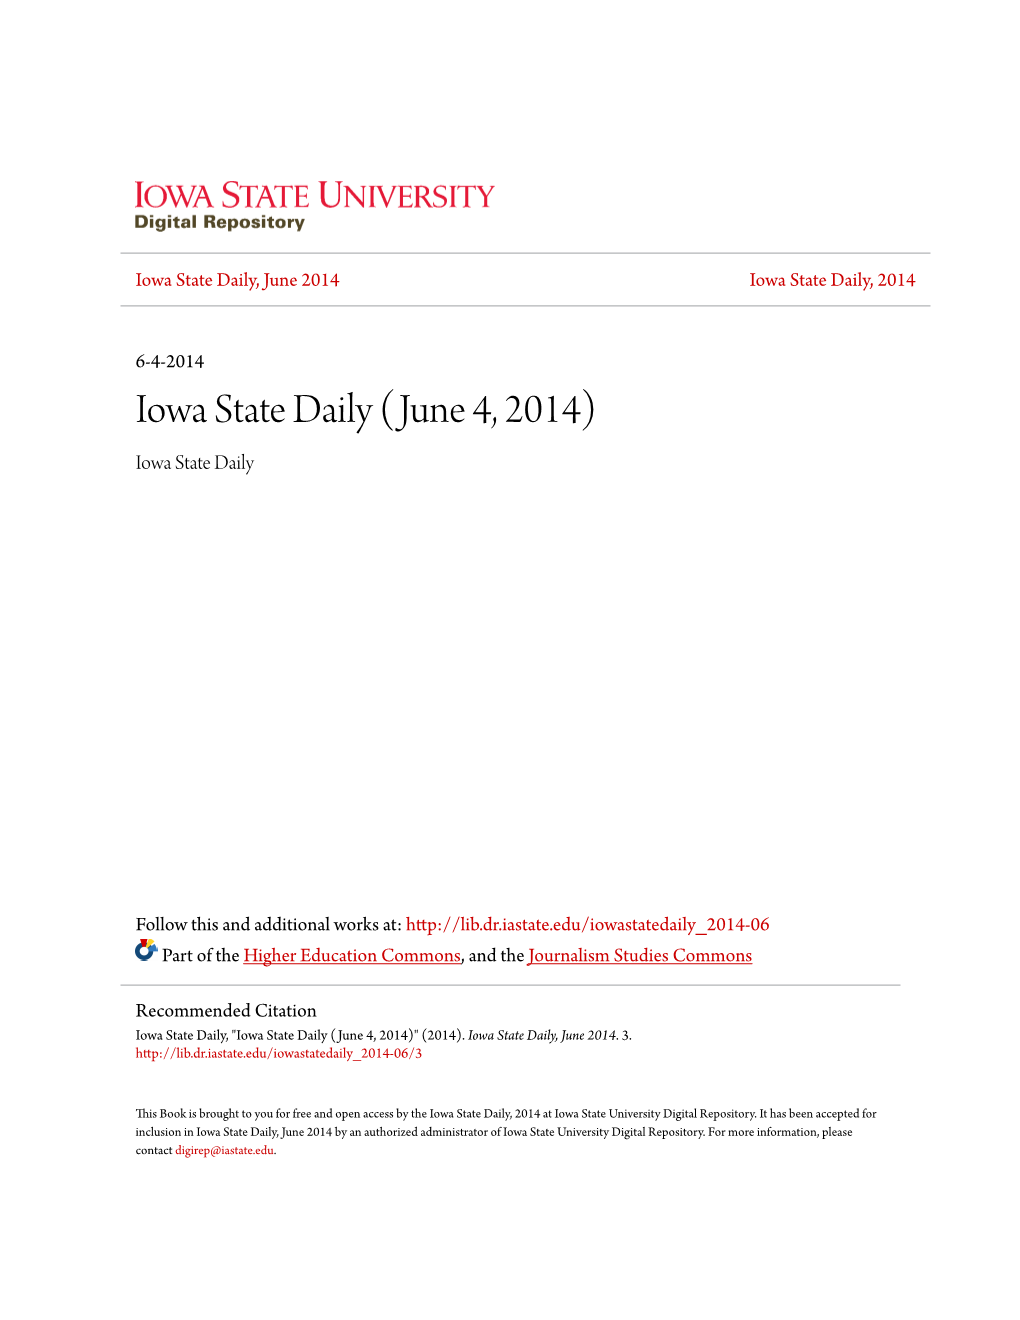 Iowa State Daily (June 4, 2014) Iowa State Daily